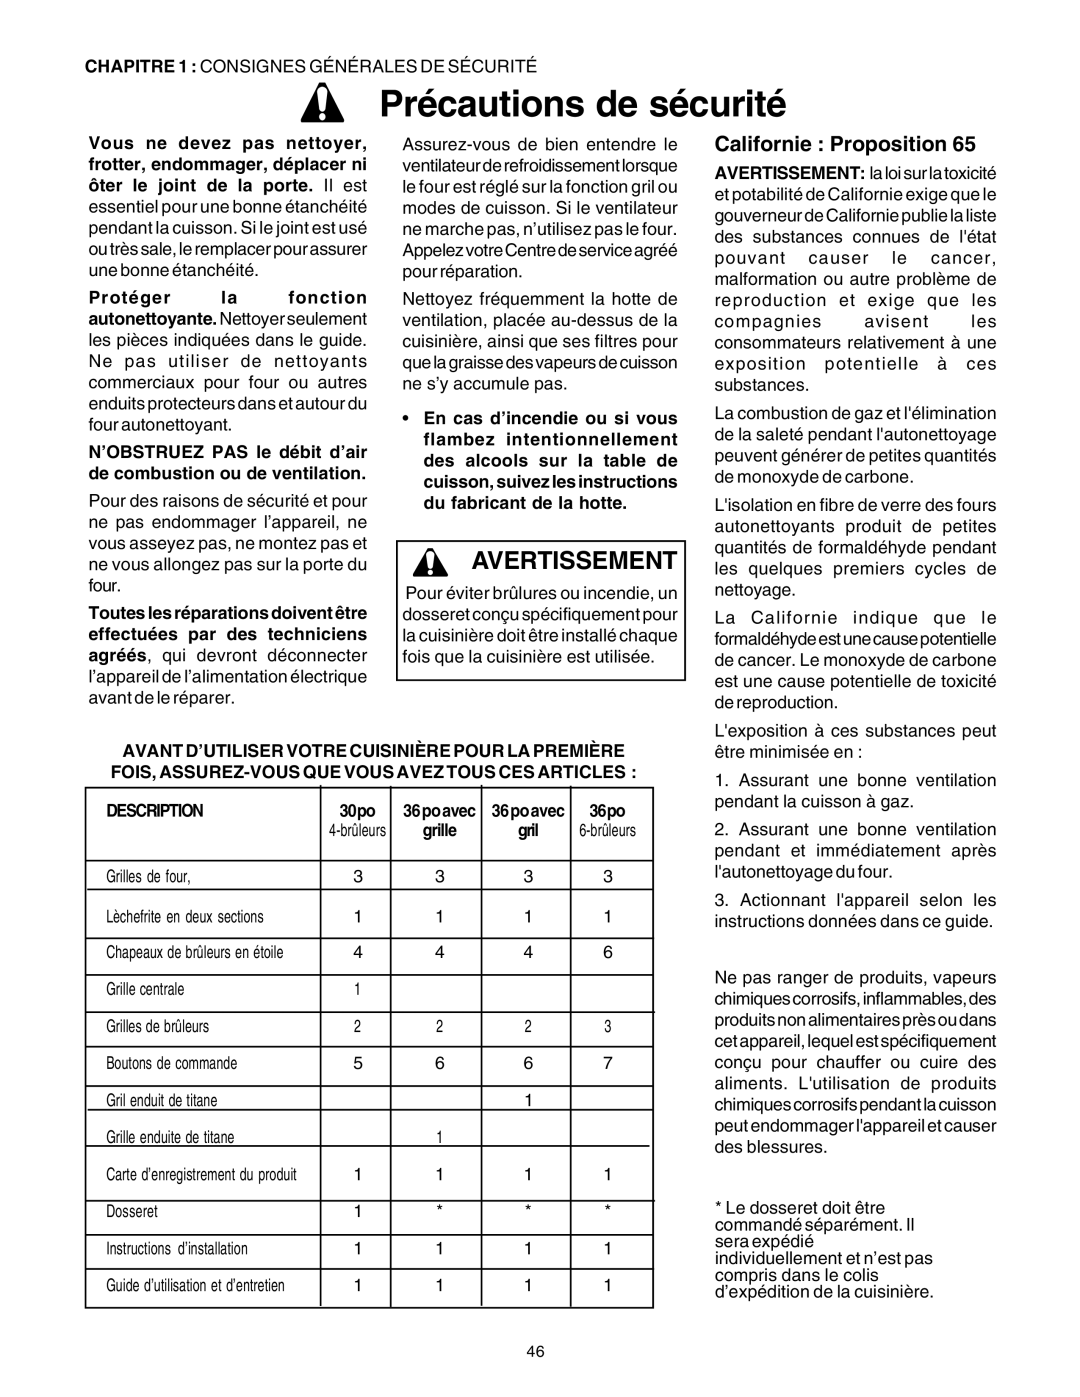 Thermador DP30 manual Avertissement, Californie : Proposition, Précautions de sécurité 